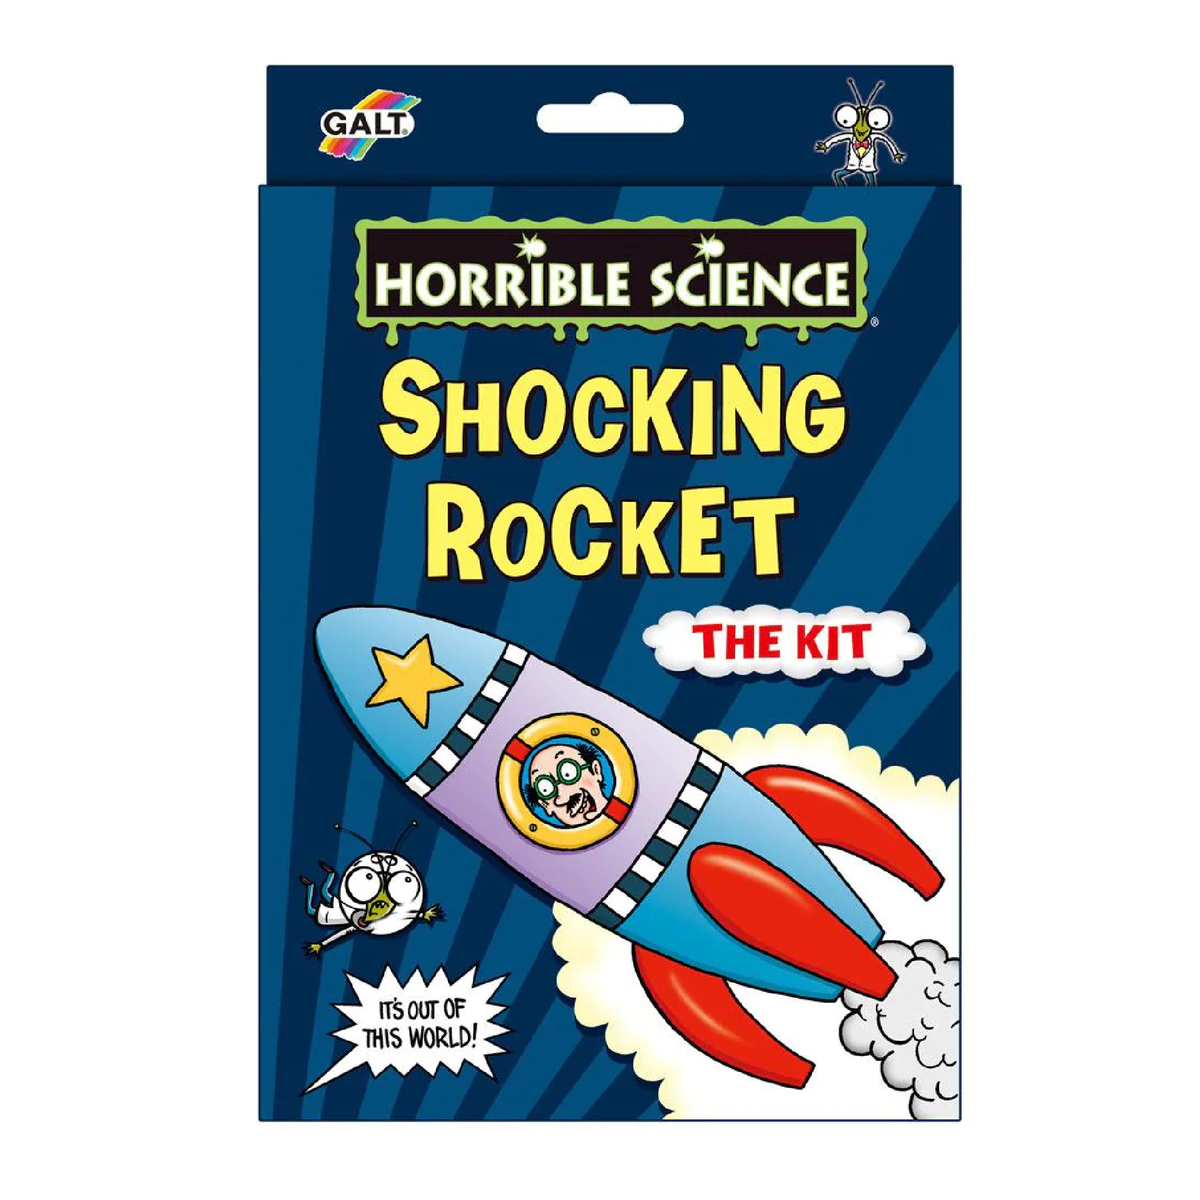 Galt Horrible Science Shocking Rocket, 8 years +, 1105515